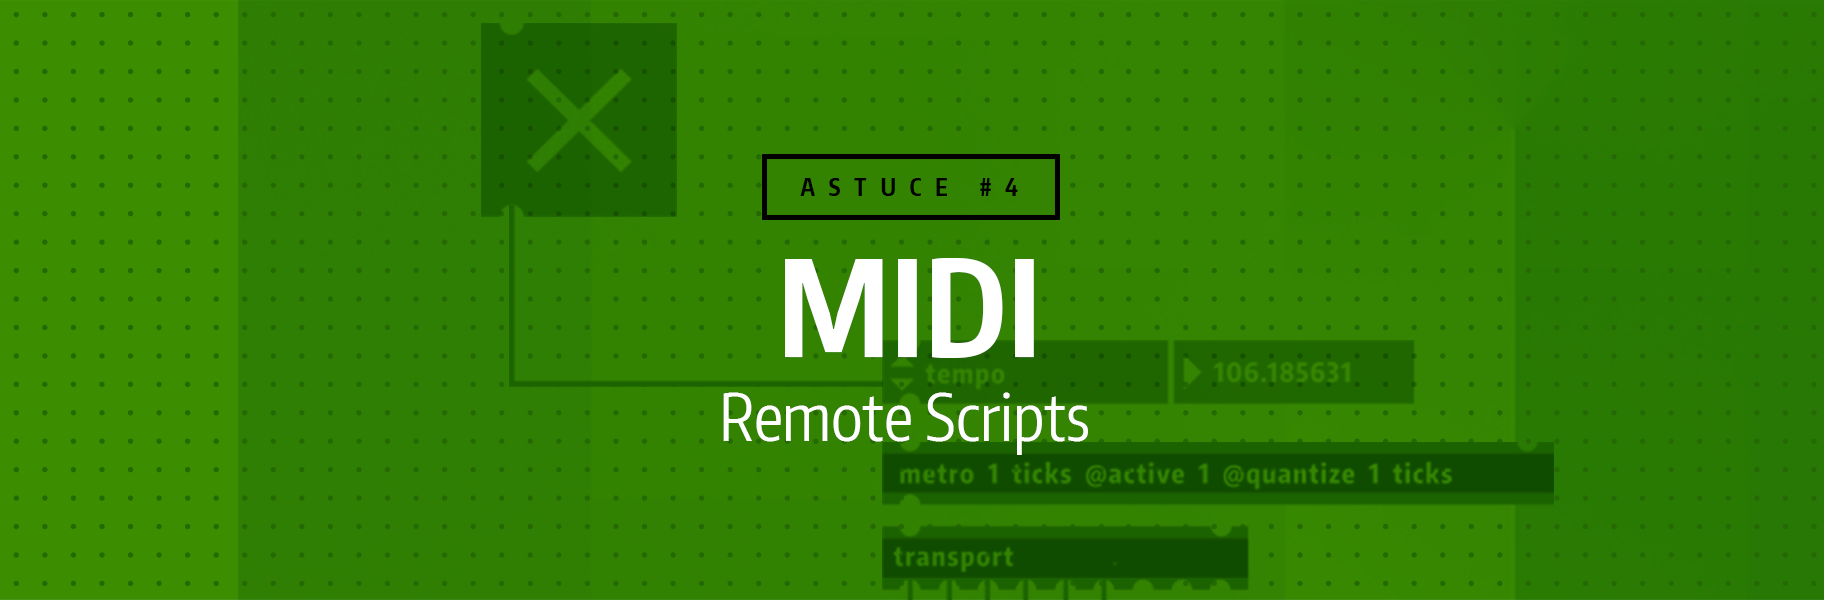 Astuce rapide #4 - MIDI Remote Scripts